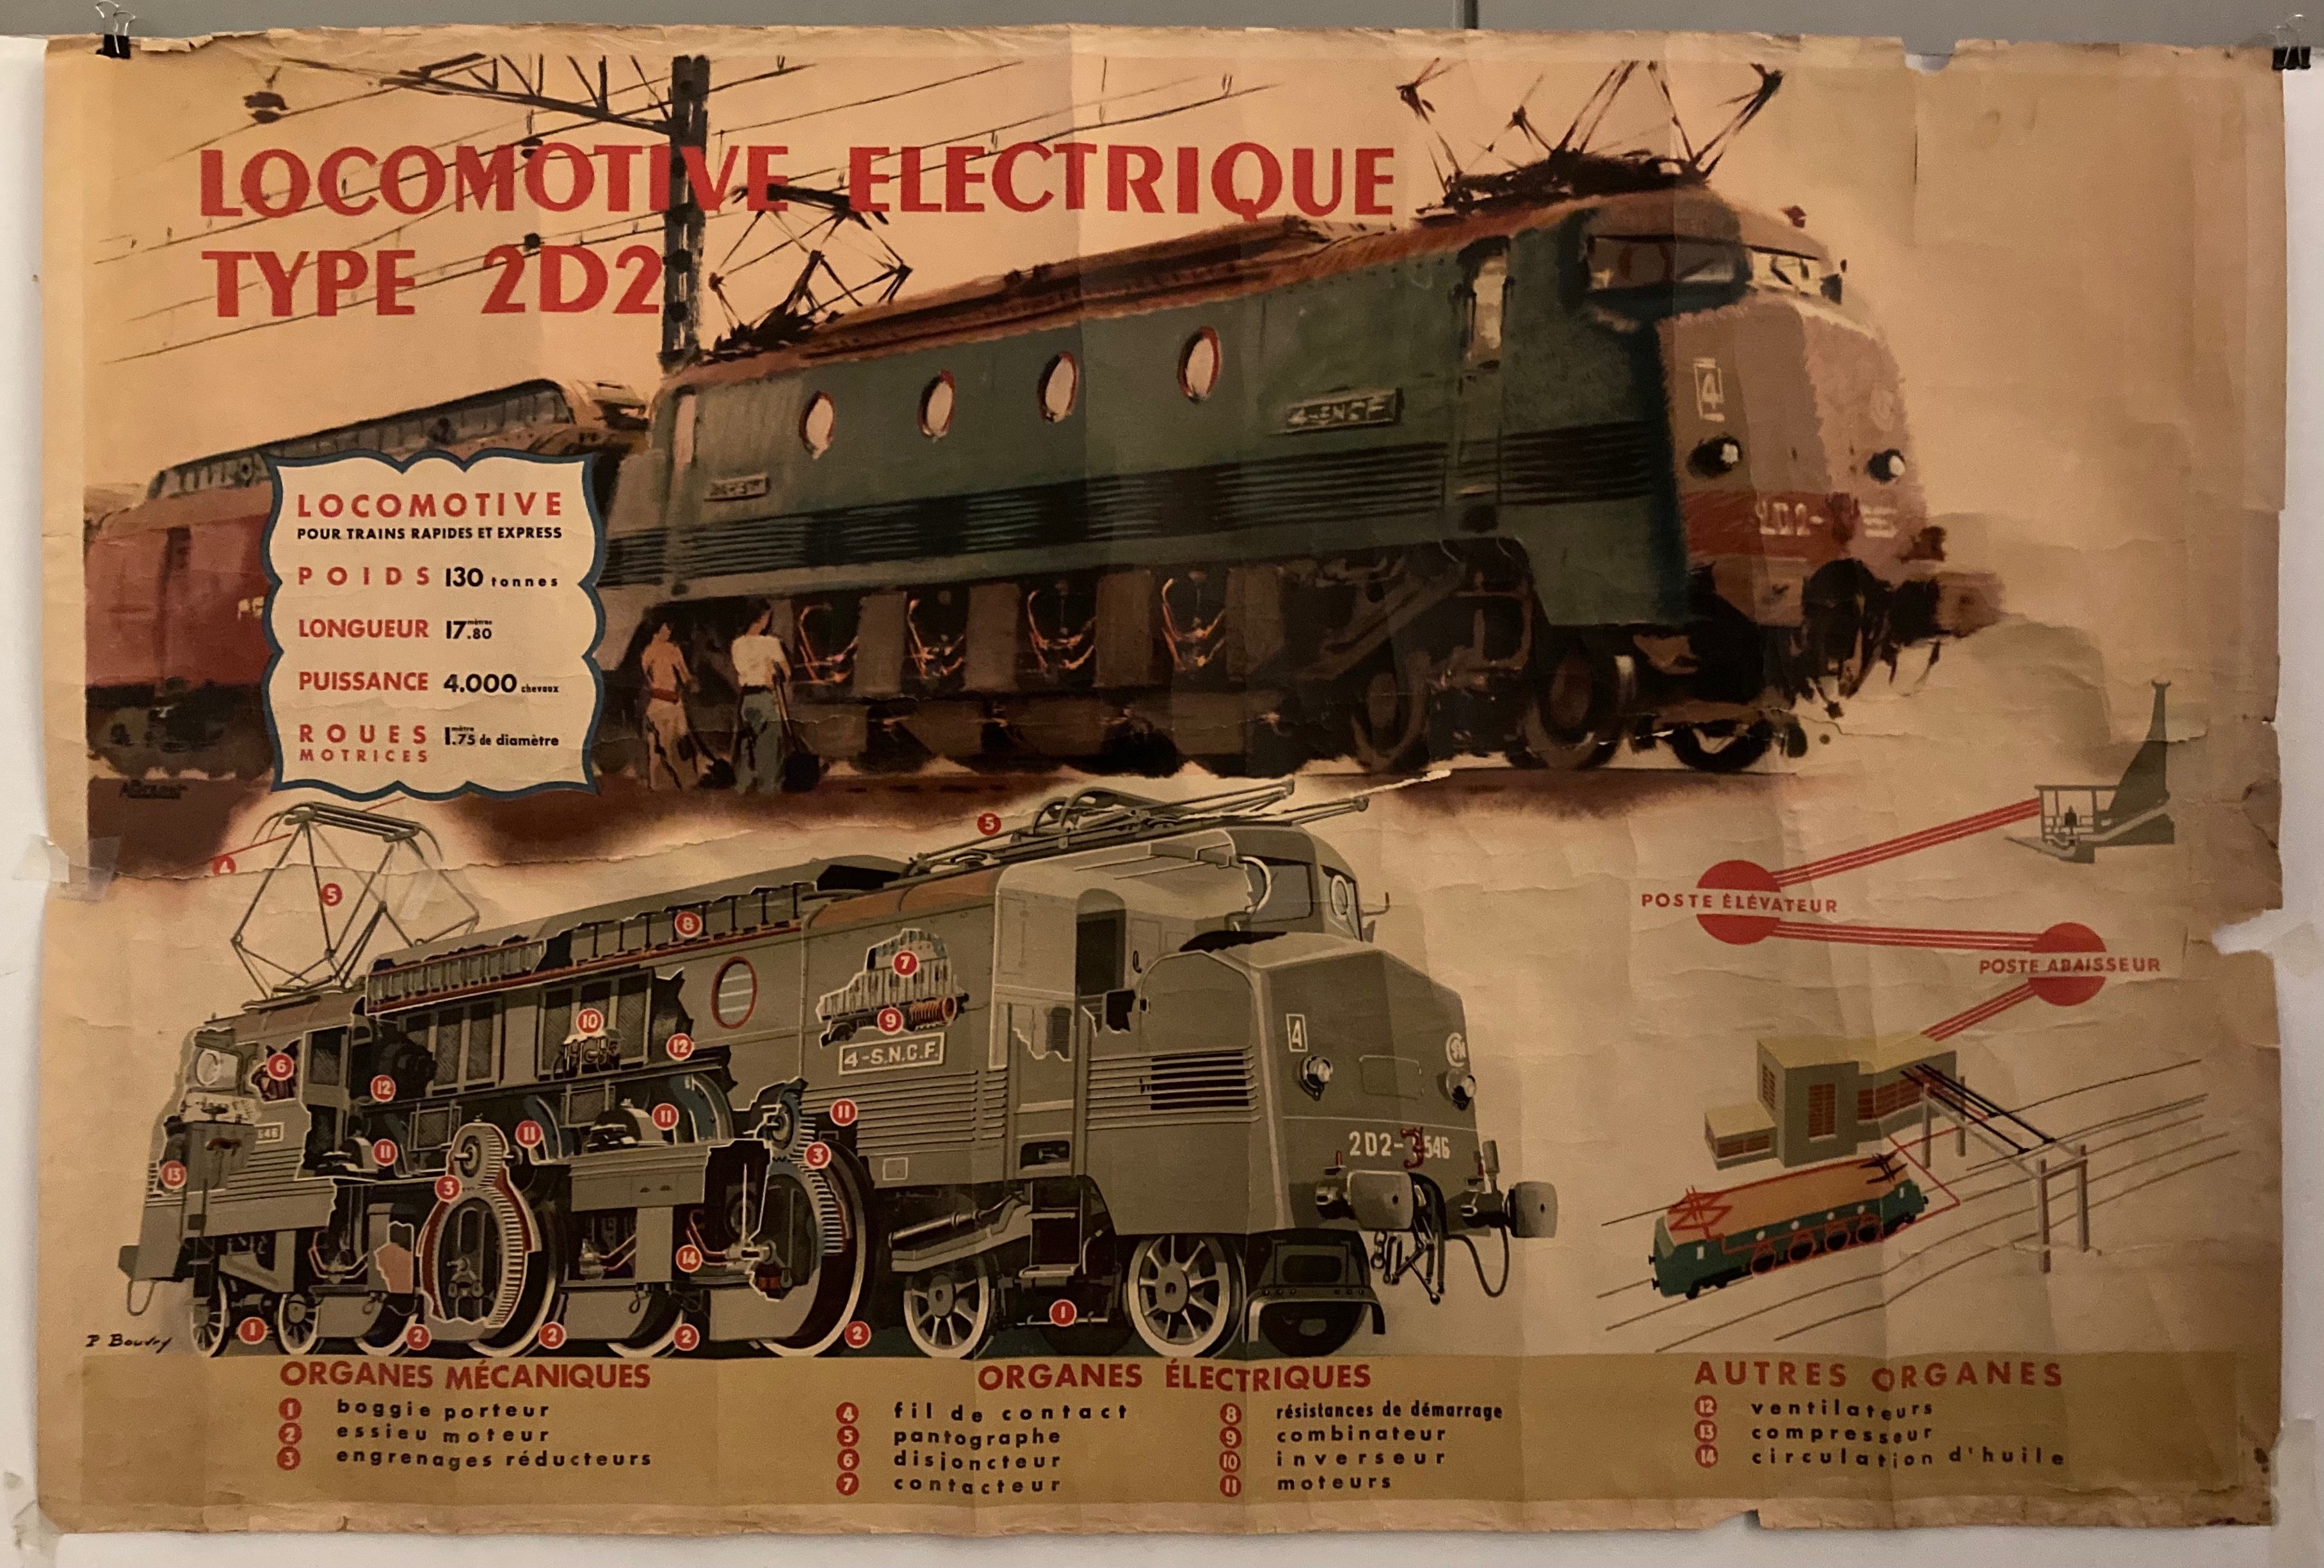 Locomotive Electrique Poster